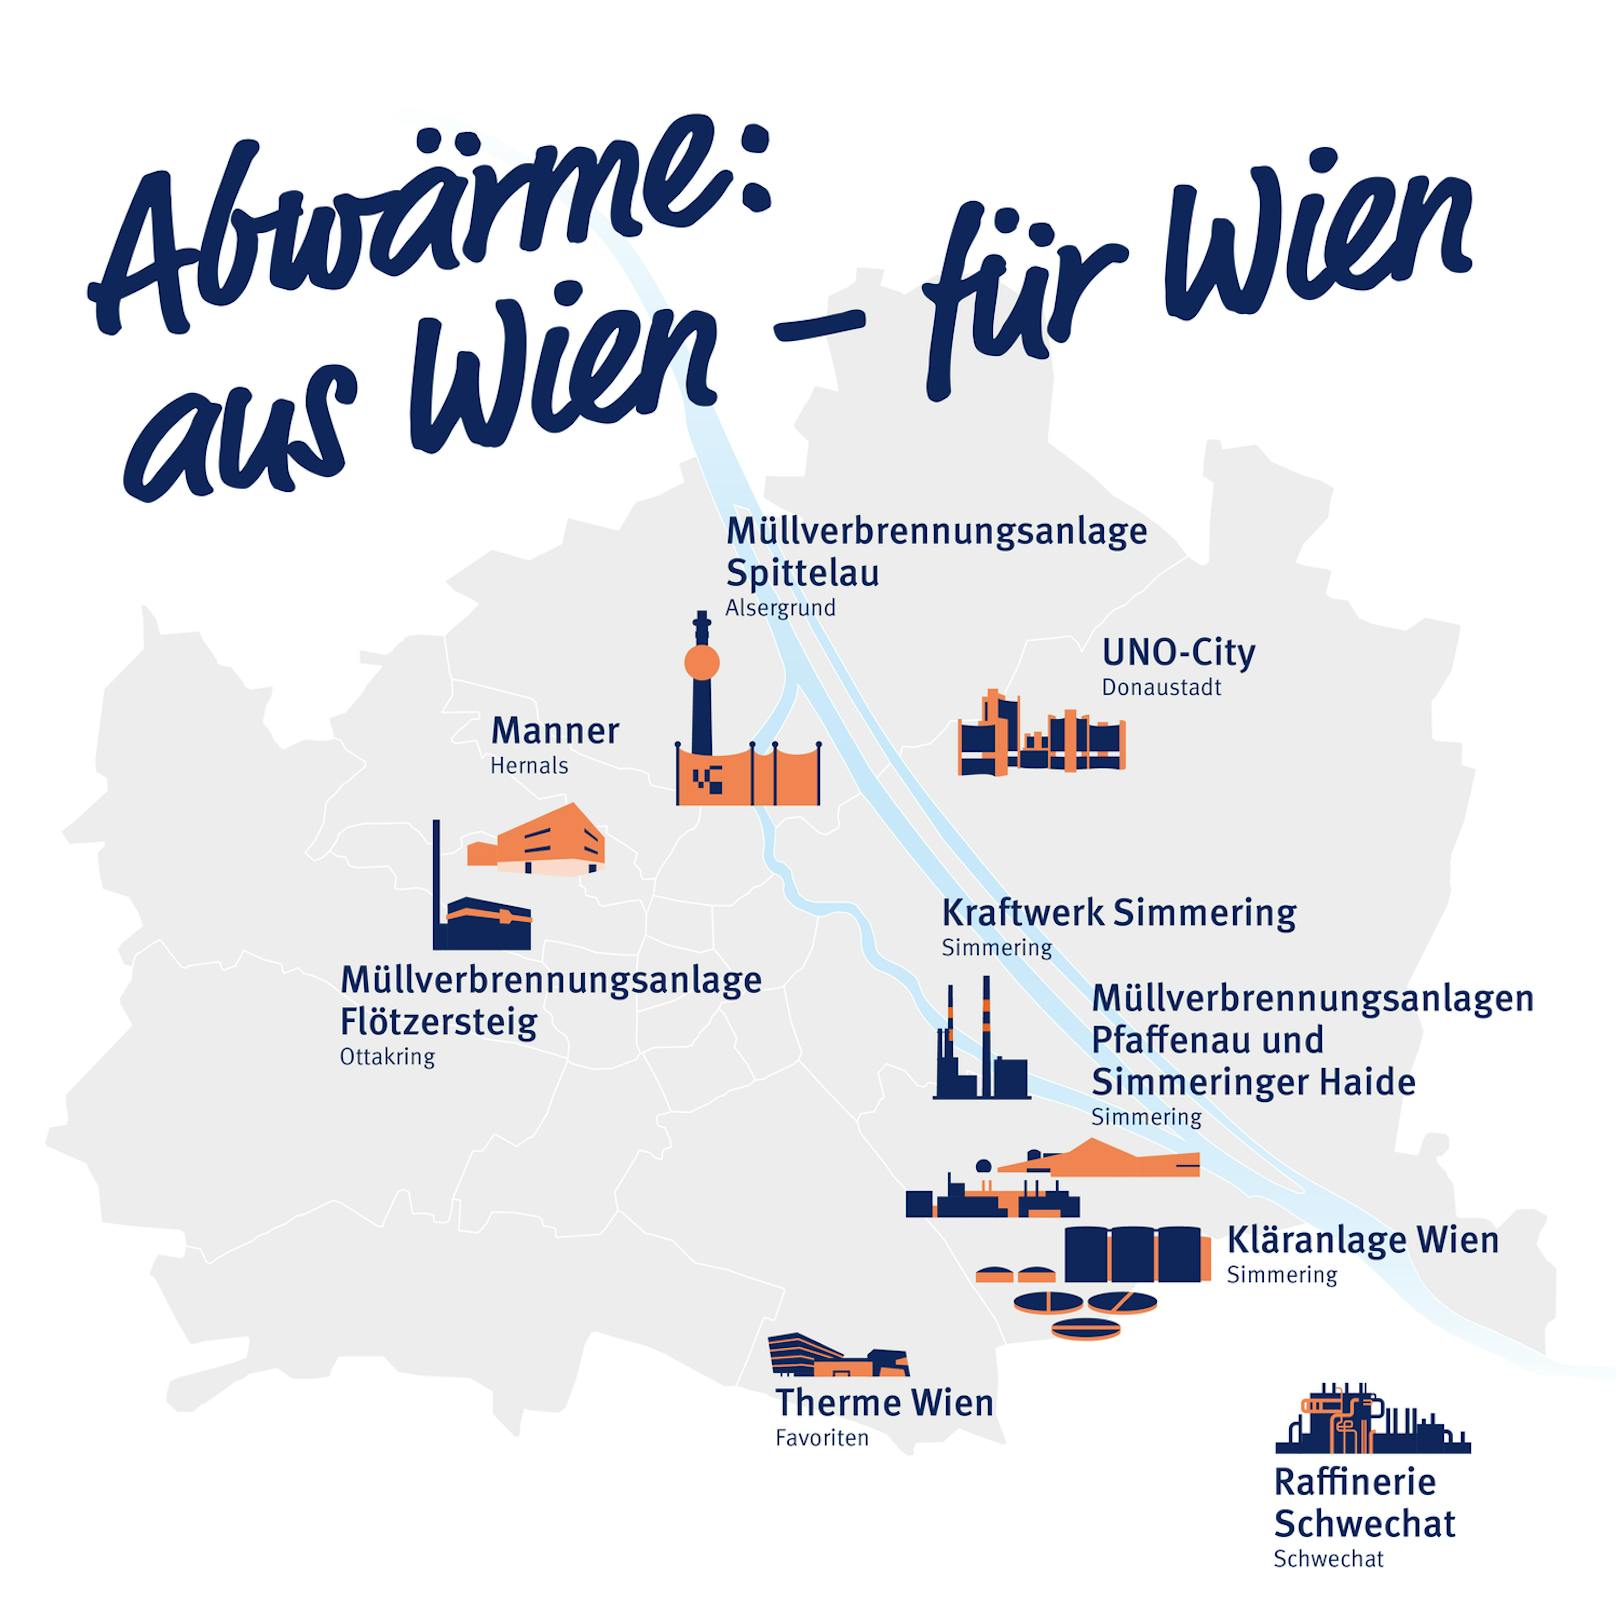 Wien Energie: Abwärme aus Wien für Wien